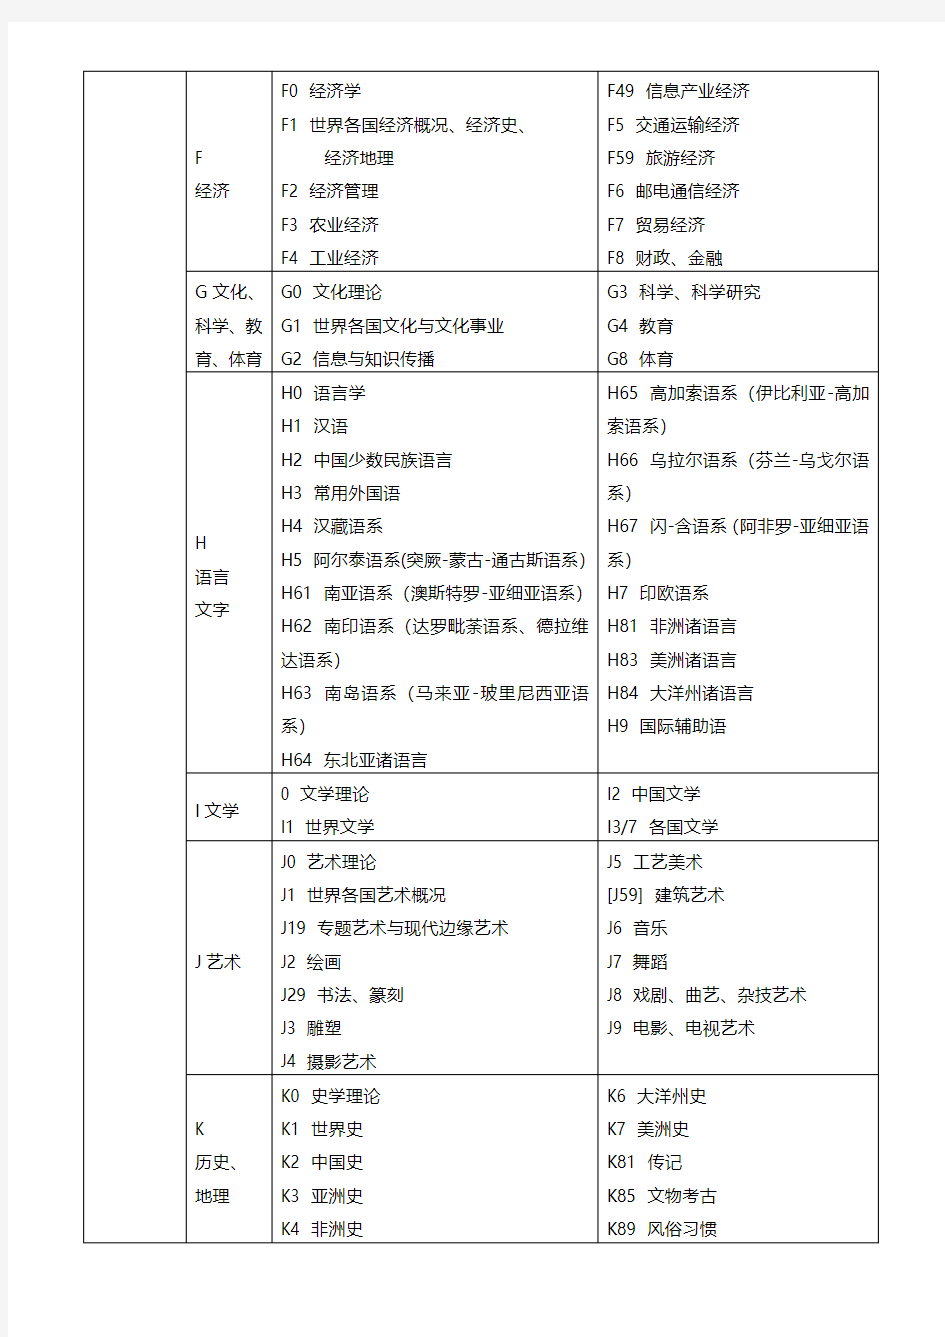 中图图书馆分类法简表(第五版)